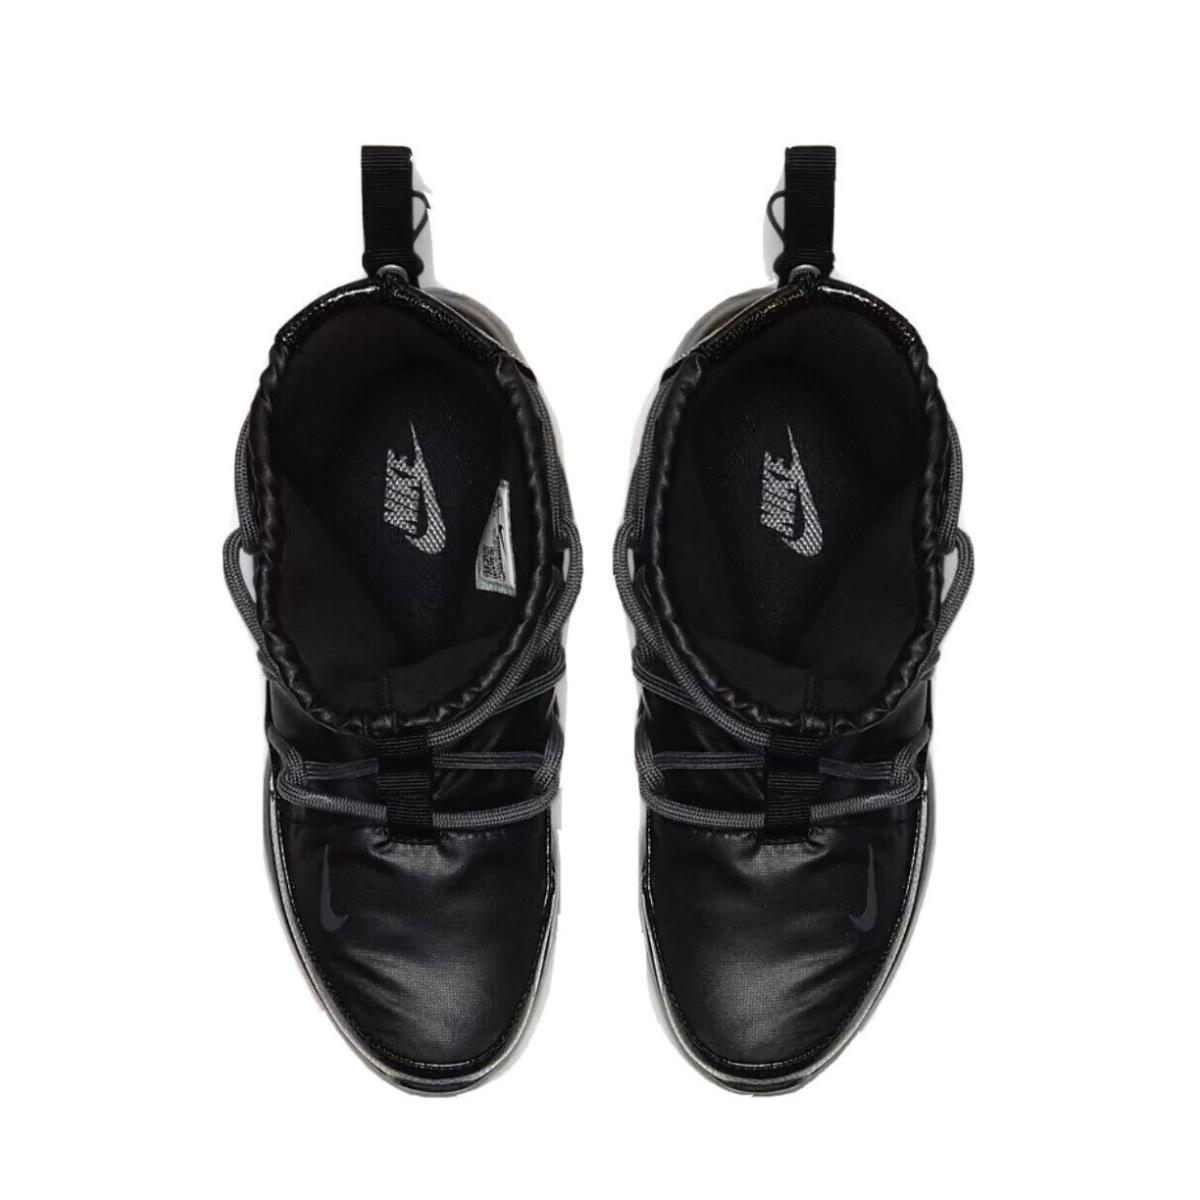 Nike shoes Tanjun - Black/Anthracite 2